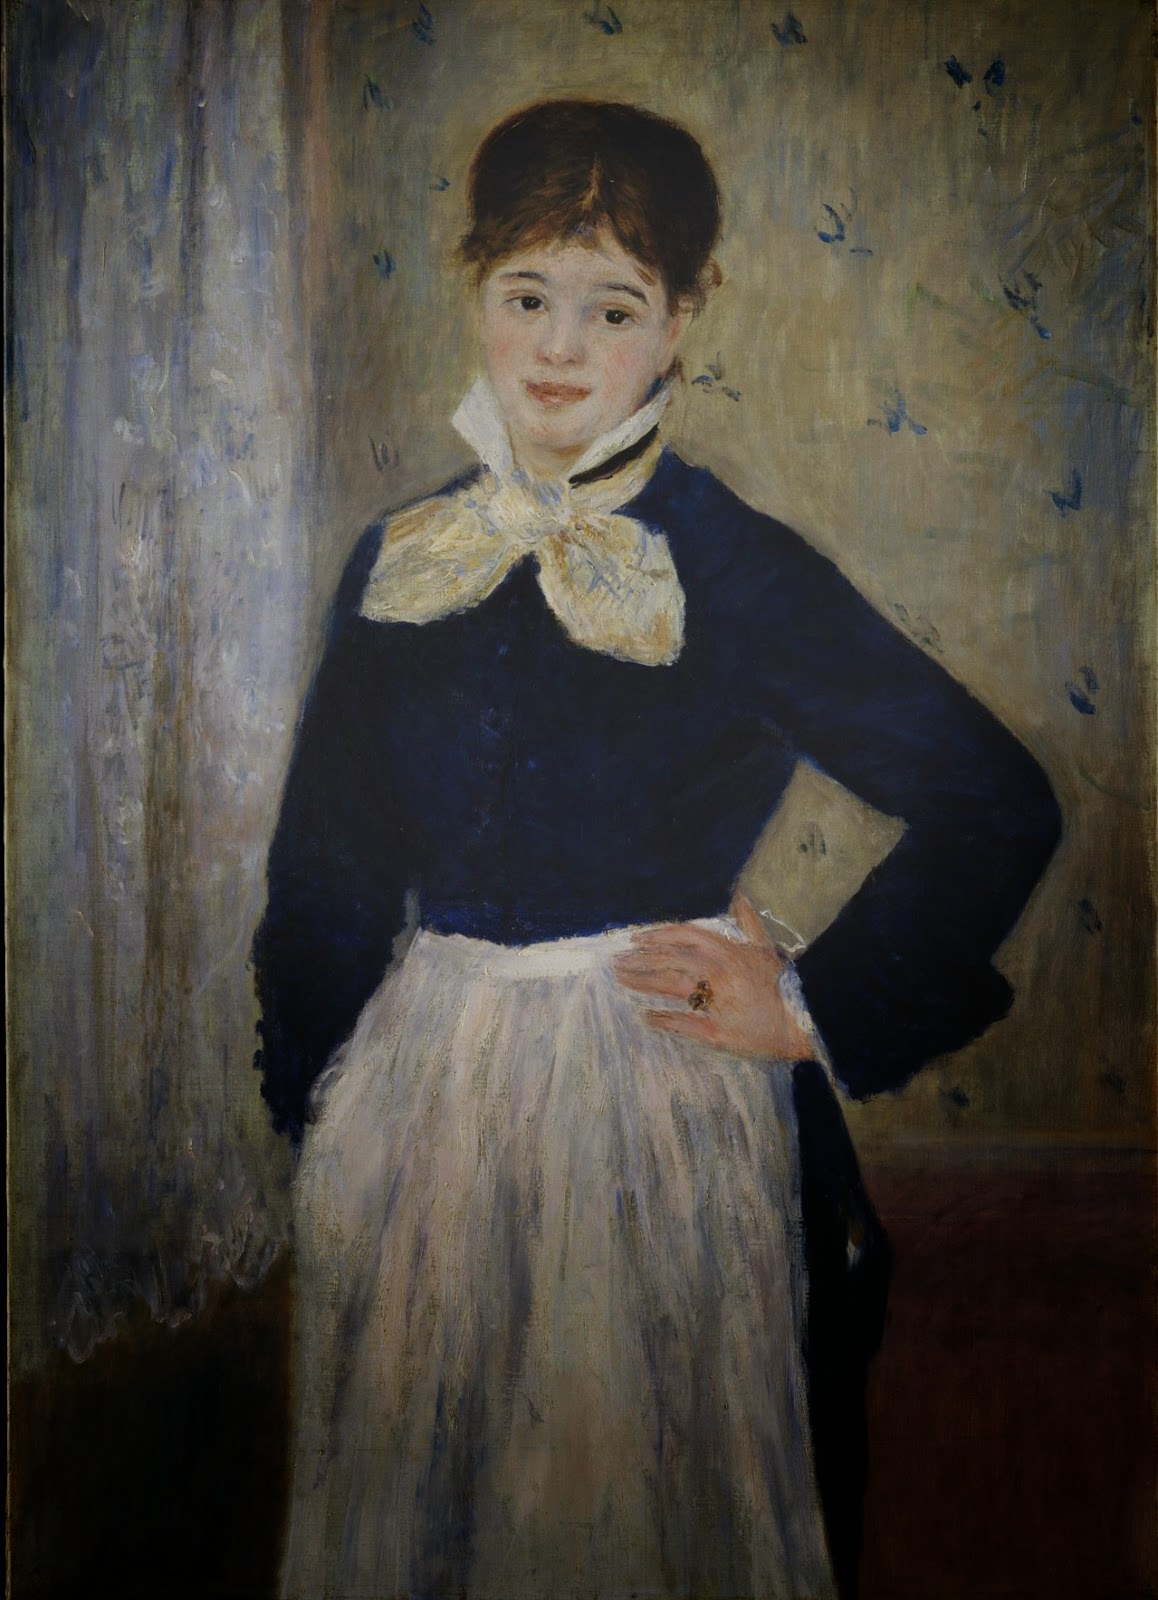 Pierre+Auguste+Renoir-1841-1-19 (128).jpg